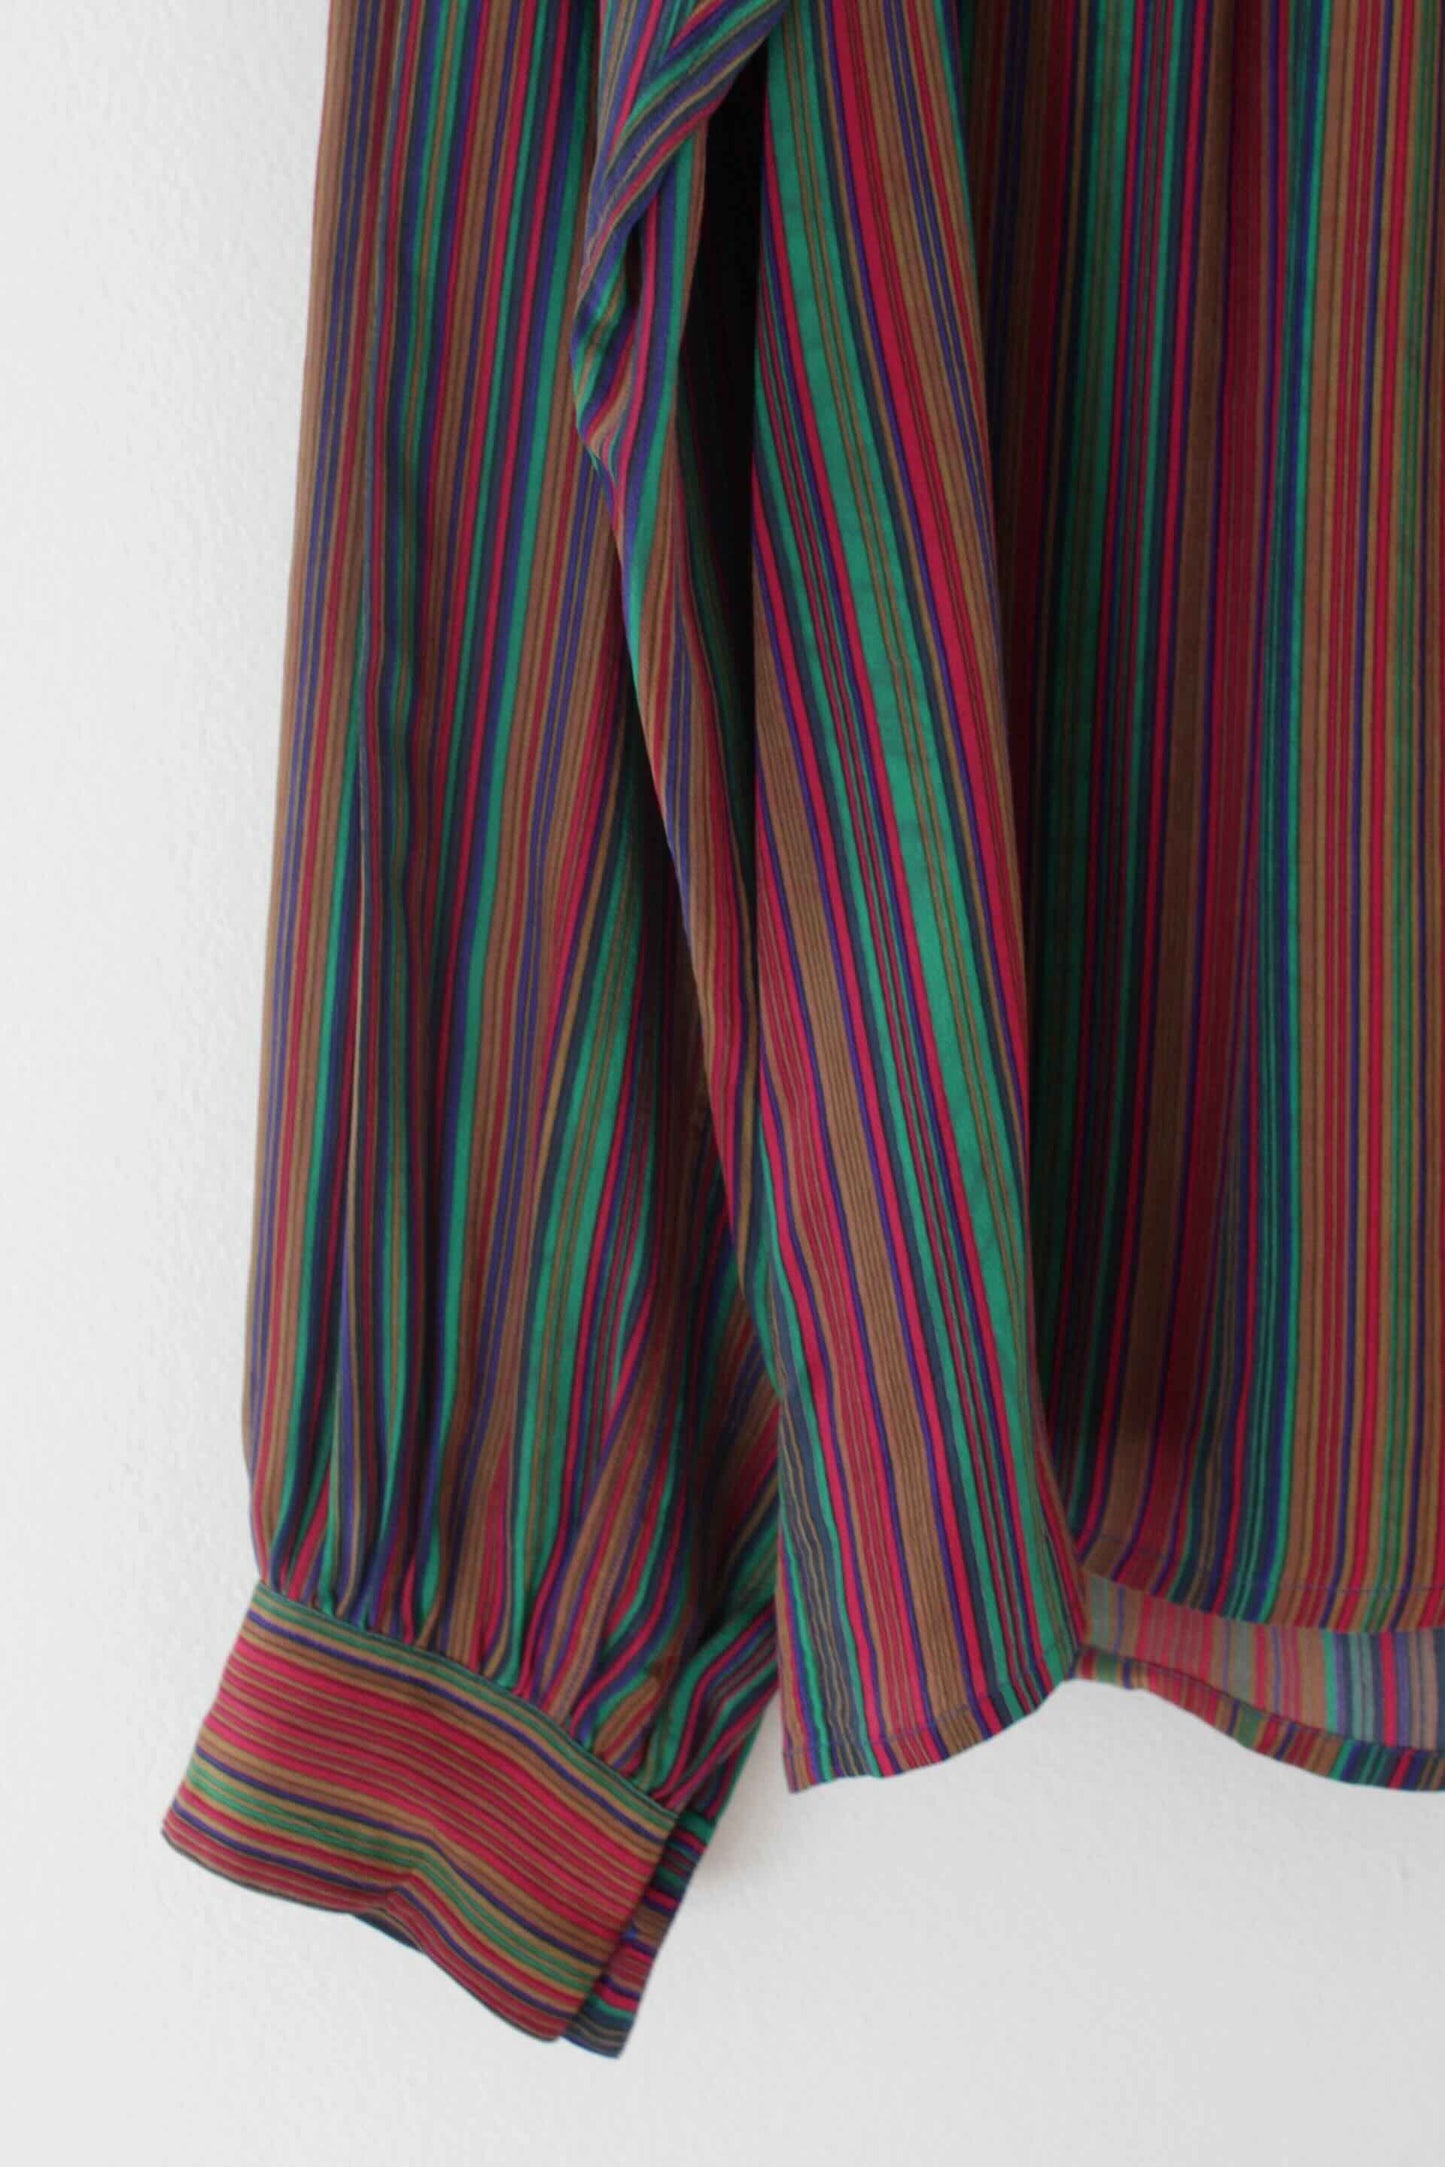 1980s Yves Saint Laurent Rive Gauche Silk Striped Top